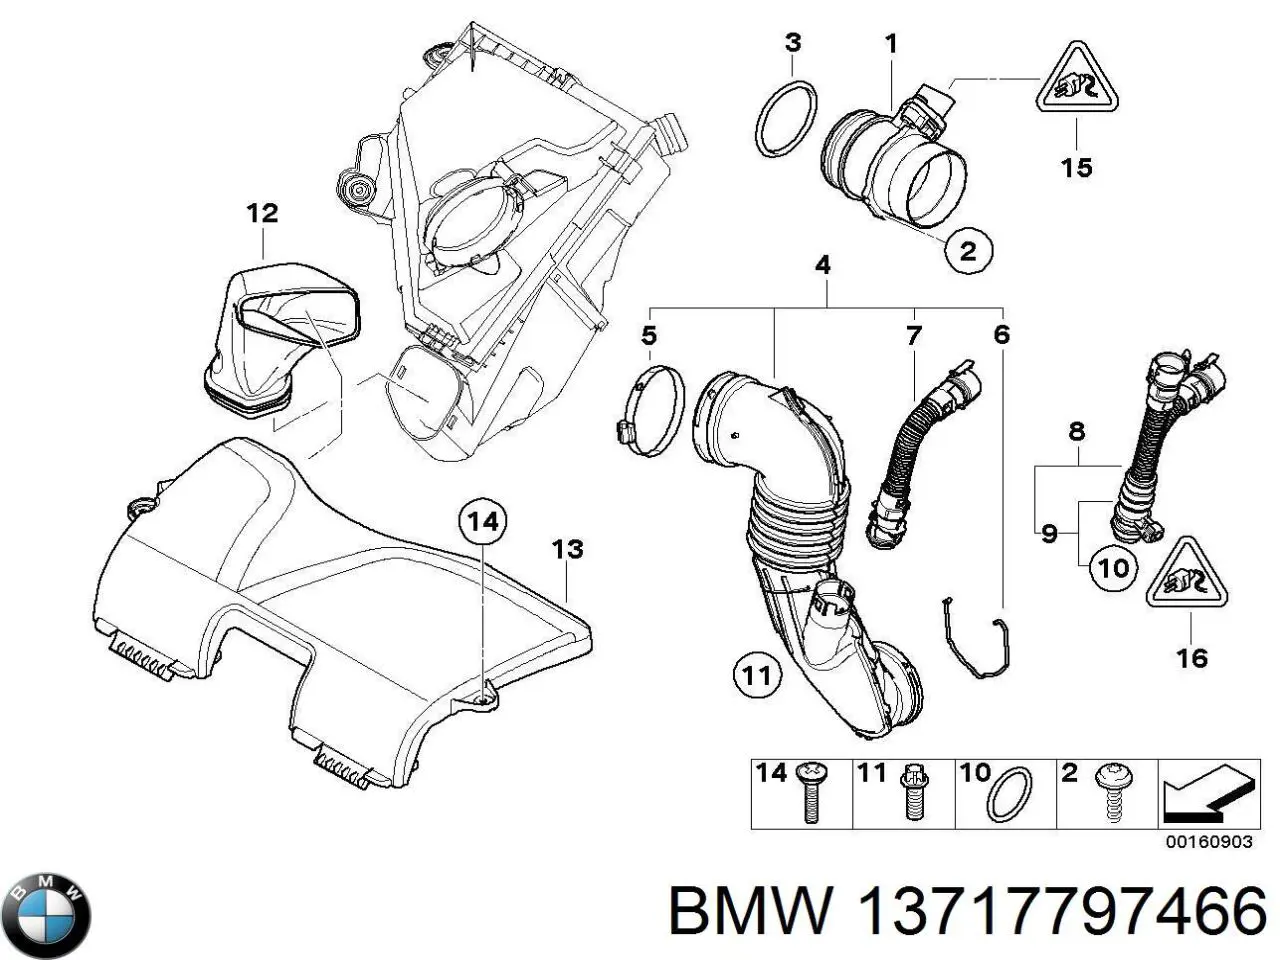 13717797466 BMW tubo flexible de aspiración, entrada del filtro de aire